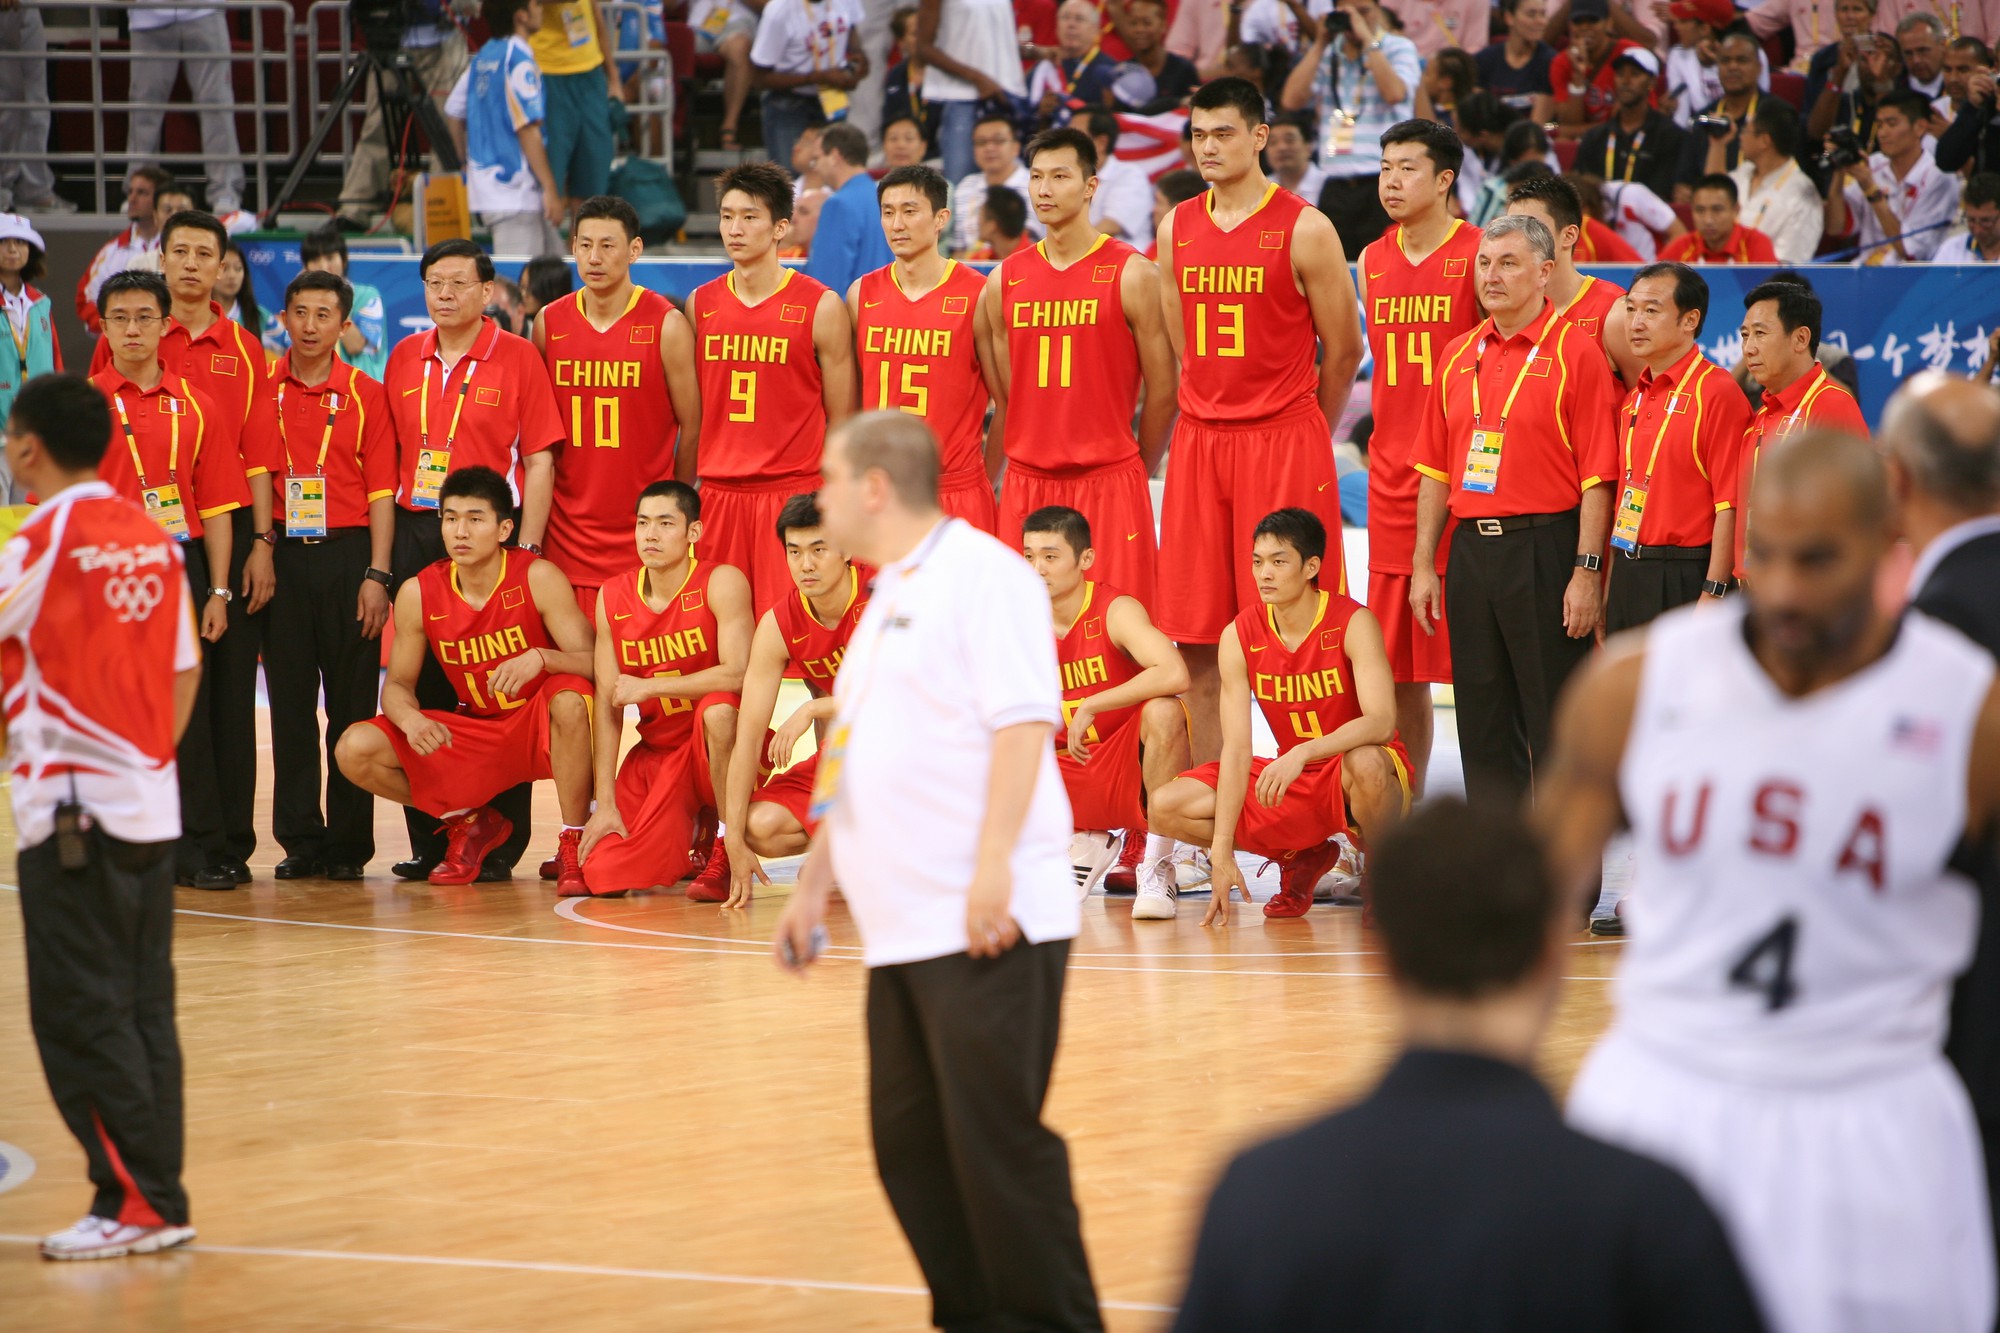 Người Trung Quốc gợi nhắc đội bóng rổ Mỹ đã bán hành cho thế hệ vàng của họ - Ảnh 2.